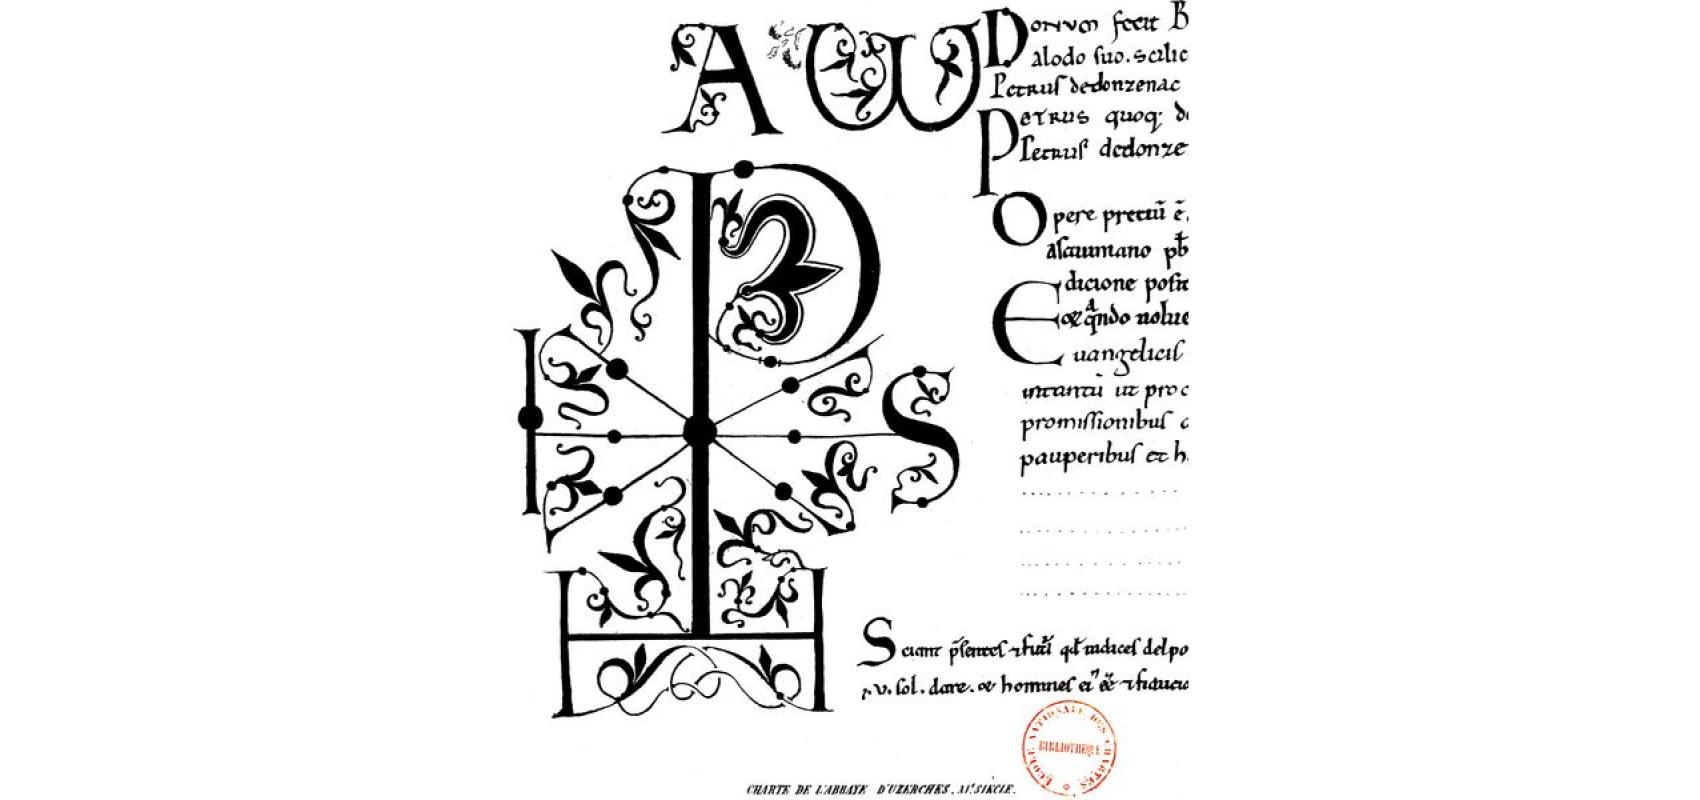 Charte de l’abbaye d’Uzerches (fac-similé) - XIe siècle - École nationale des chartes